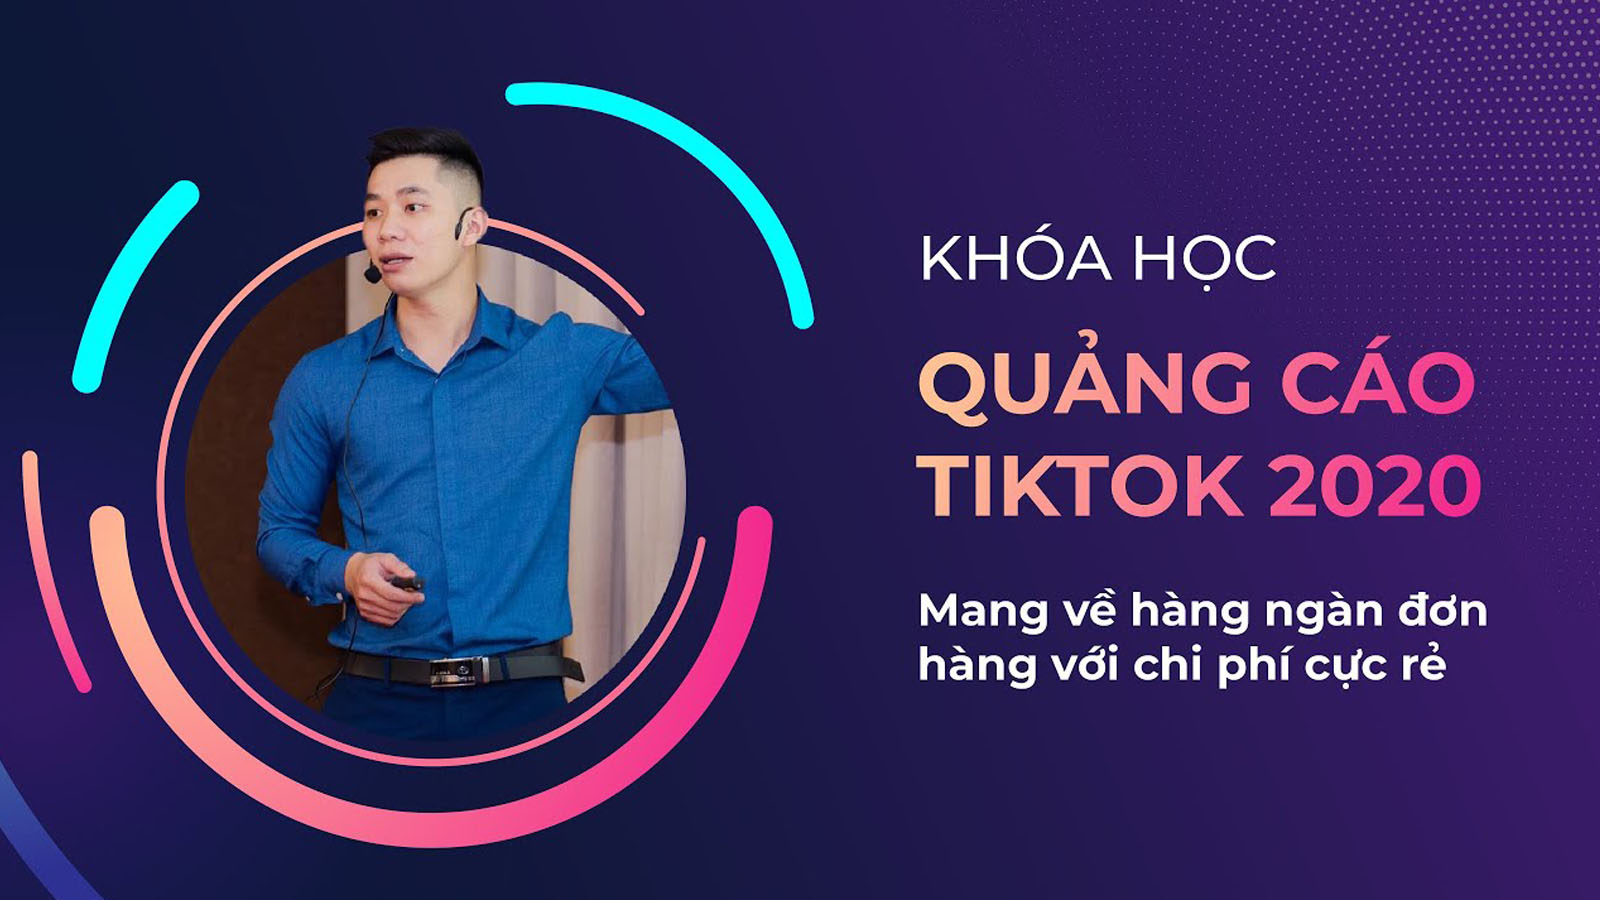 Khóa học Quảng cáo Tiktok - Mang về hàng ngàn đơn hàng với chi phí cực rẻ của giảng viên Nguyễn Trung Thiệu